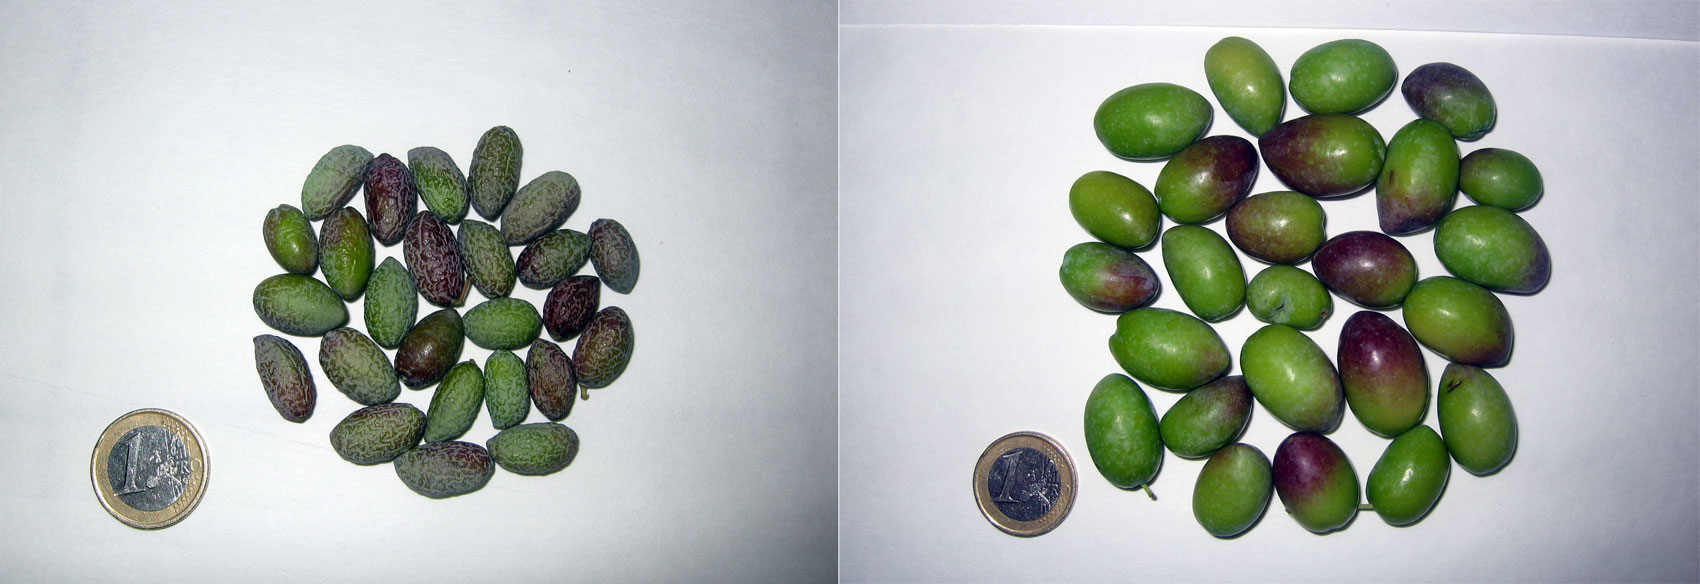 Estado de los frutos de olivos provenientes de secano frente a los regados para cubrir sus necesidades (ausencia de estrs hdrico)...